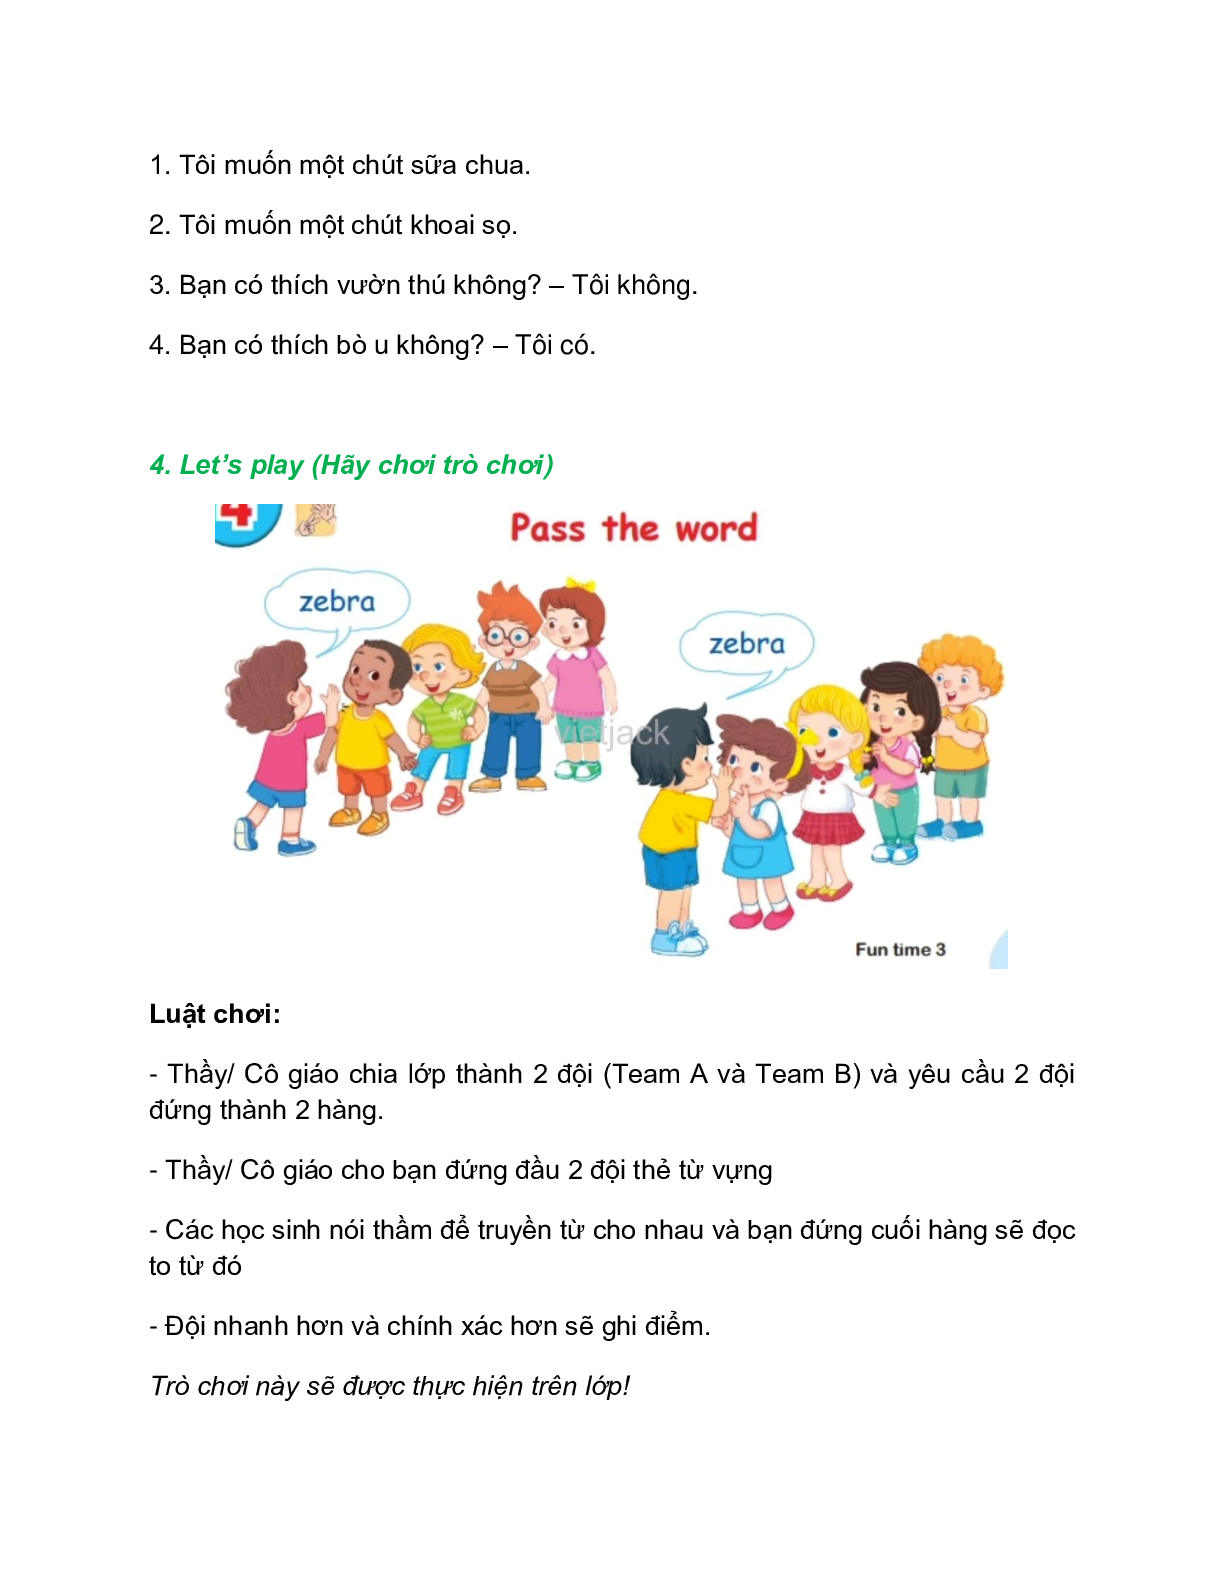 Tiếng Anh lớp 2 Fun time 3 trang 46 - 47 – Kết nối tri thức (trang 4)